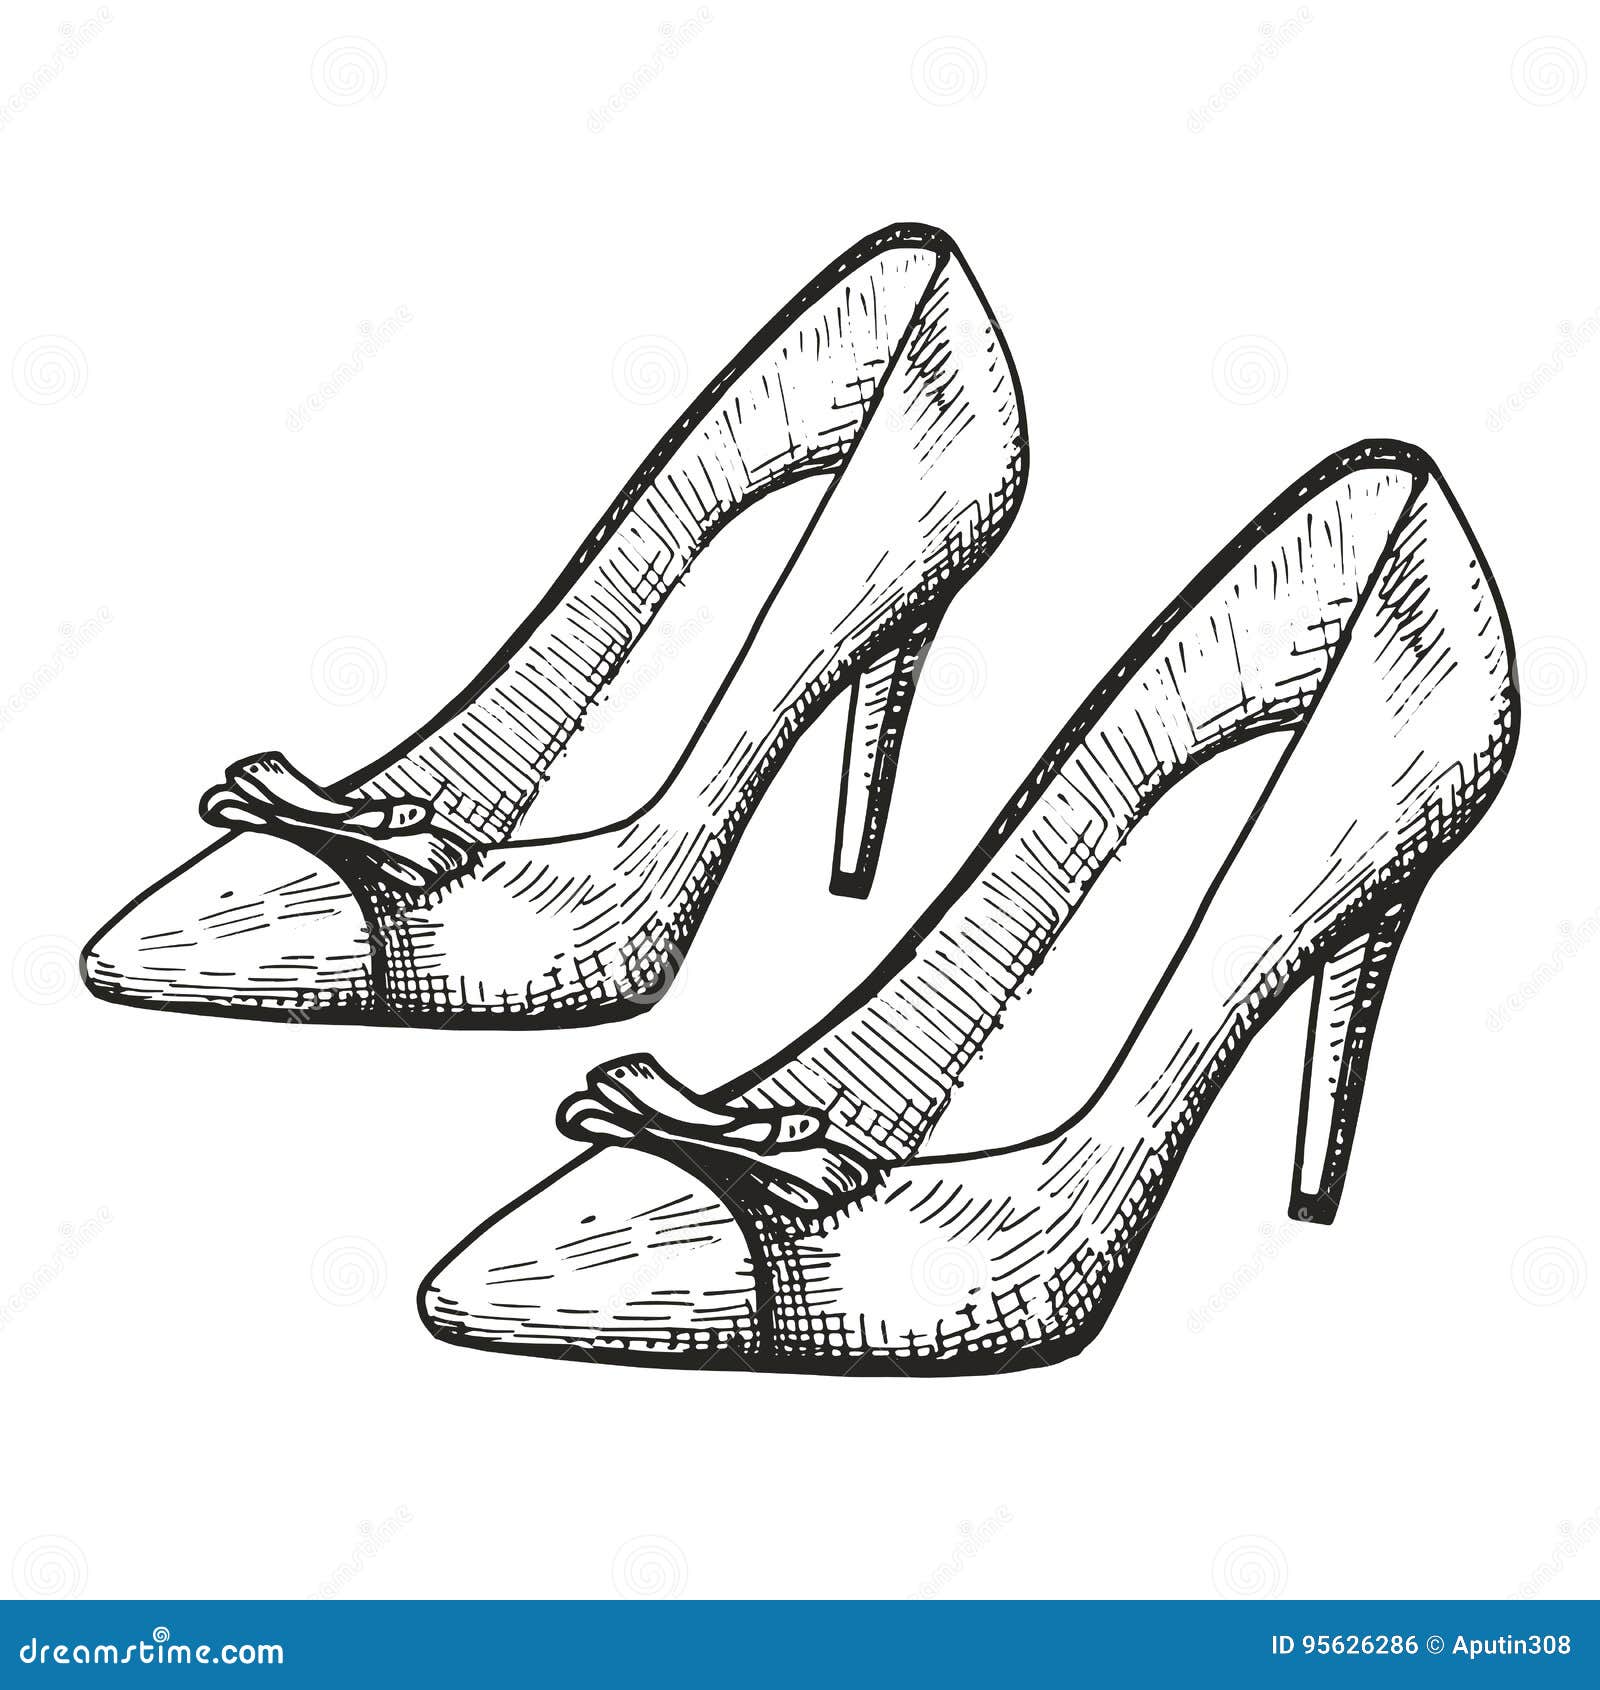 high heels sketch